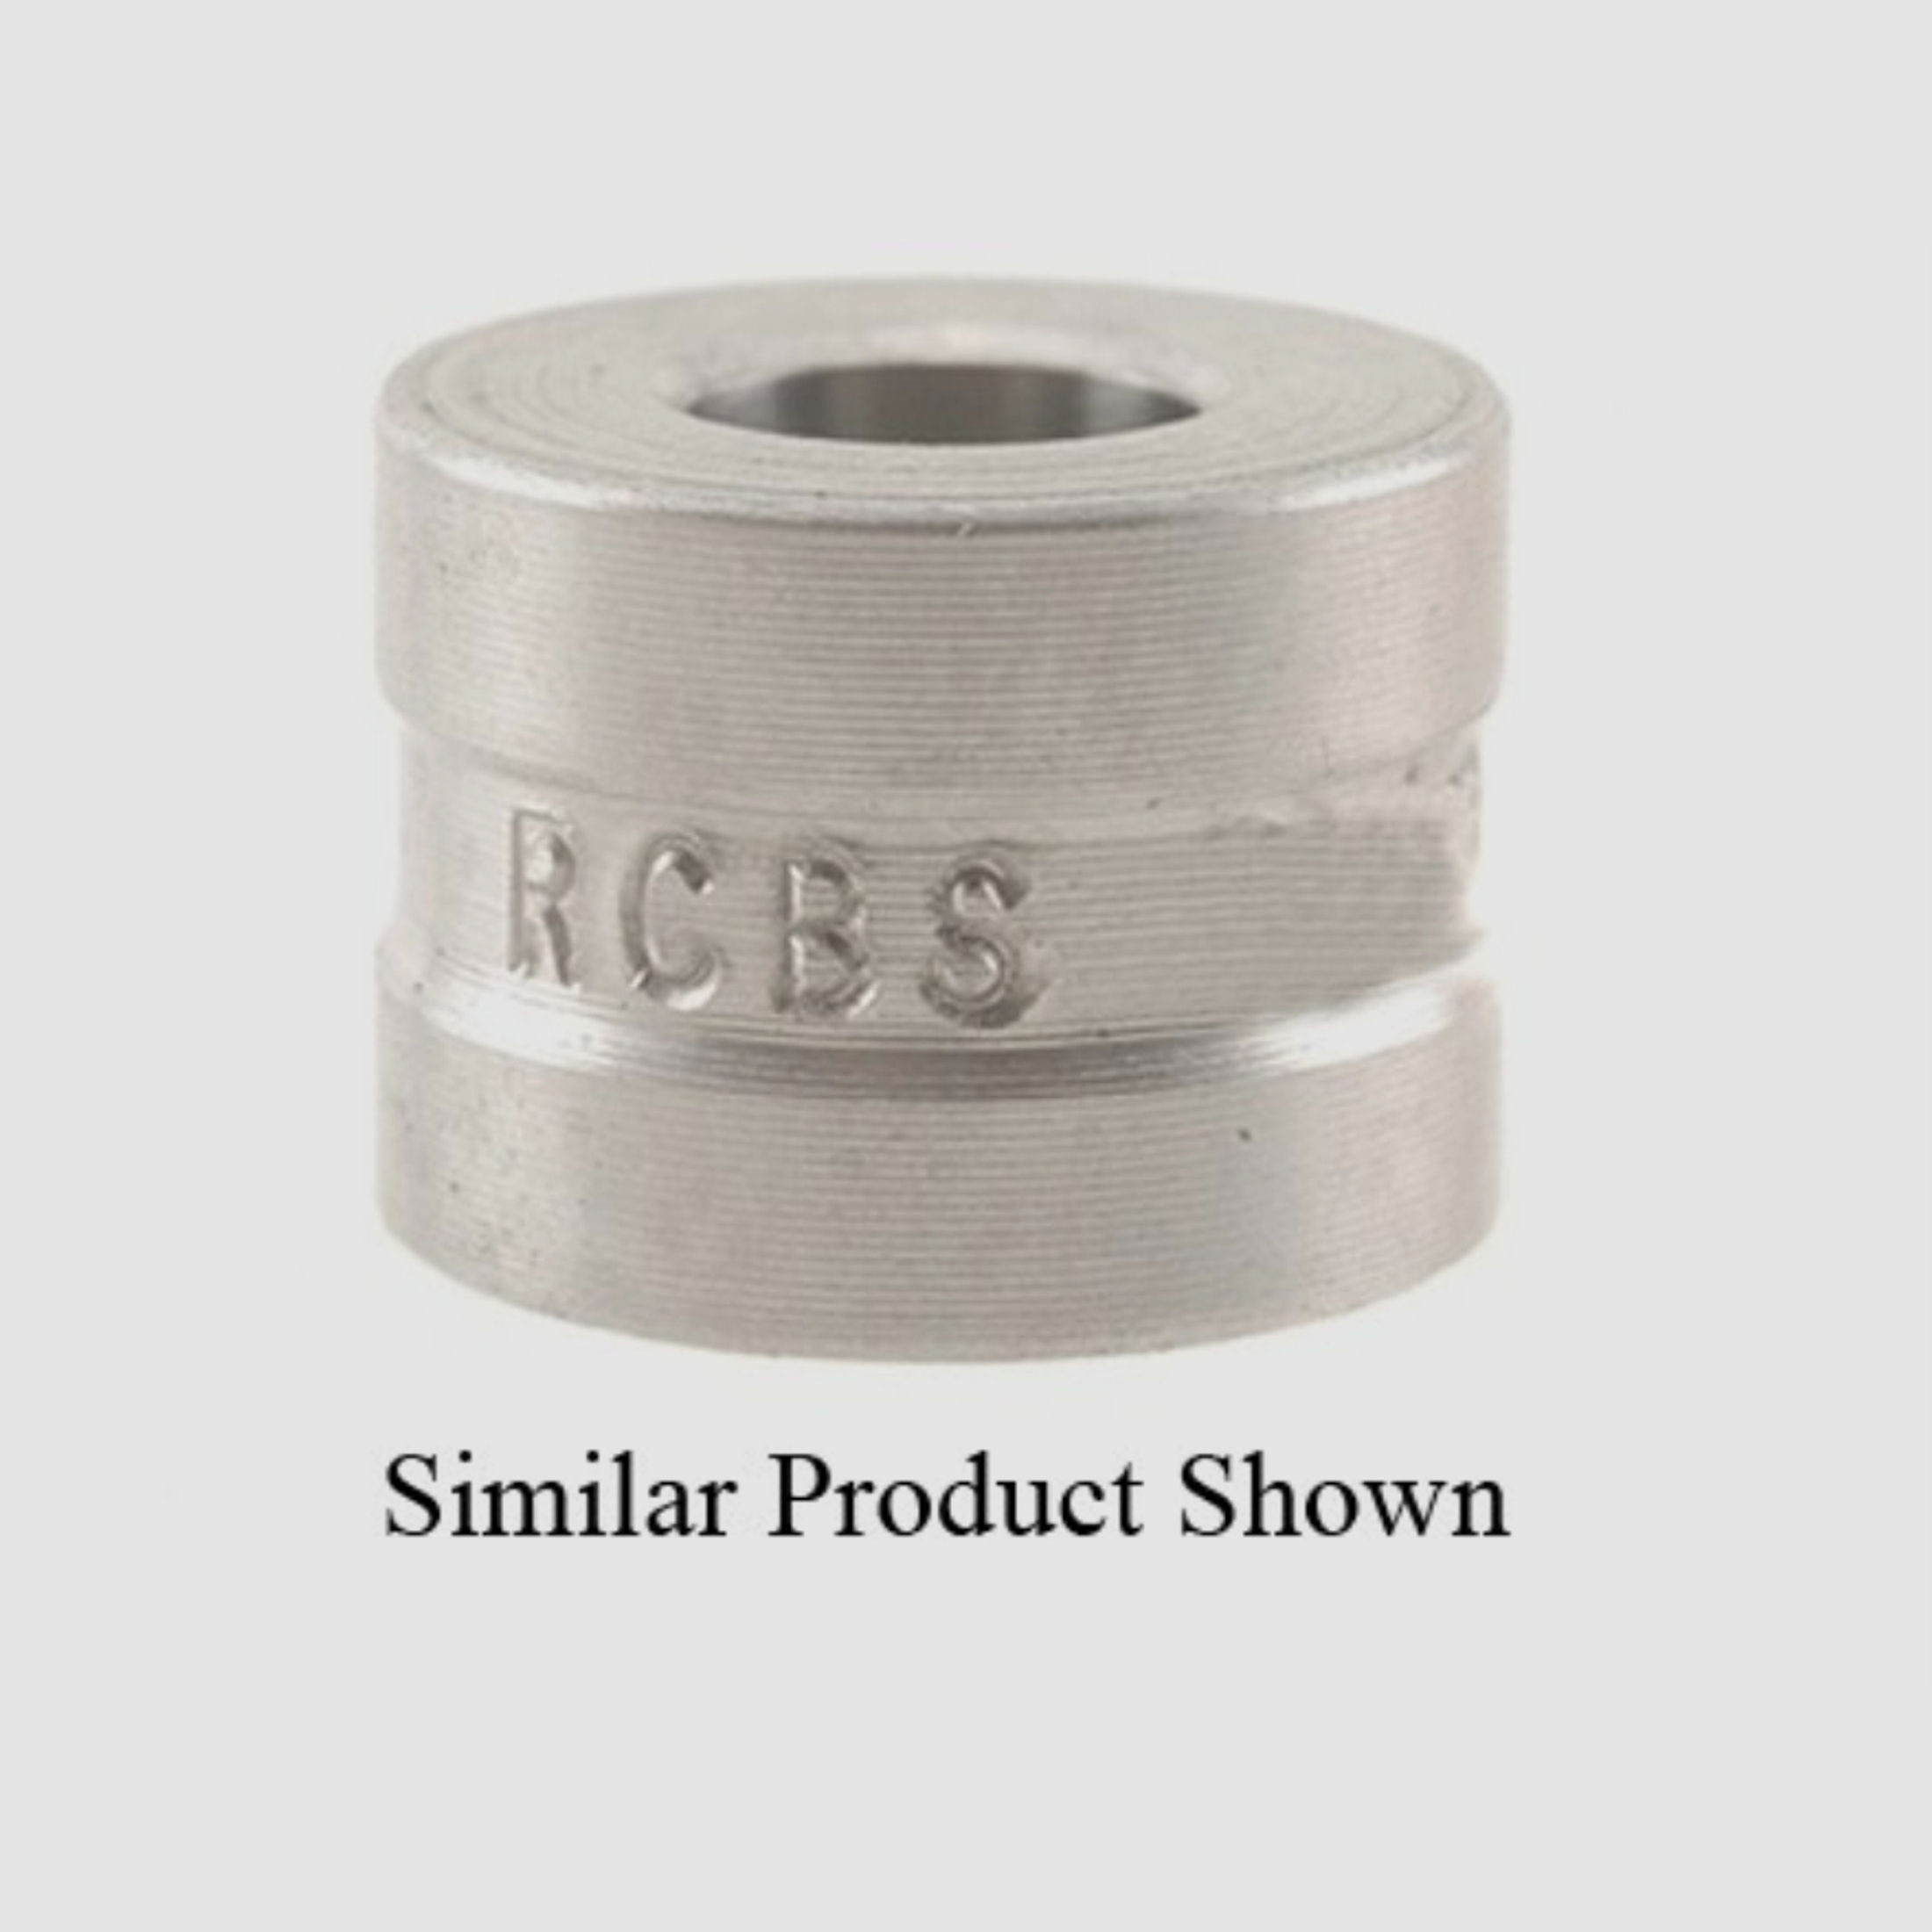 RCBS Steel Neck Sizer Die Bushing .360